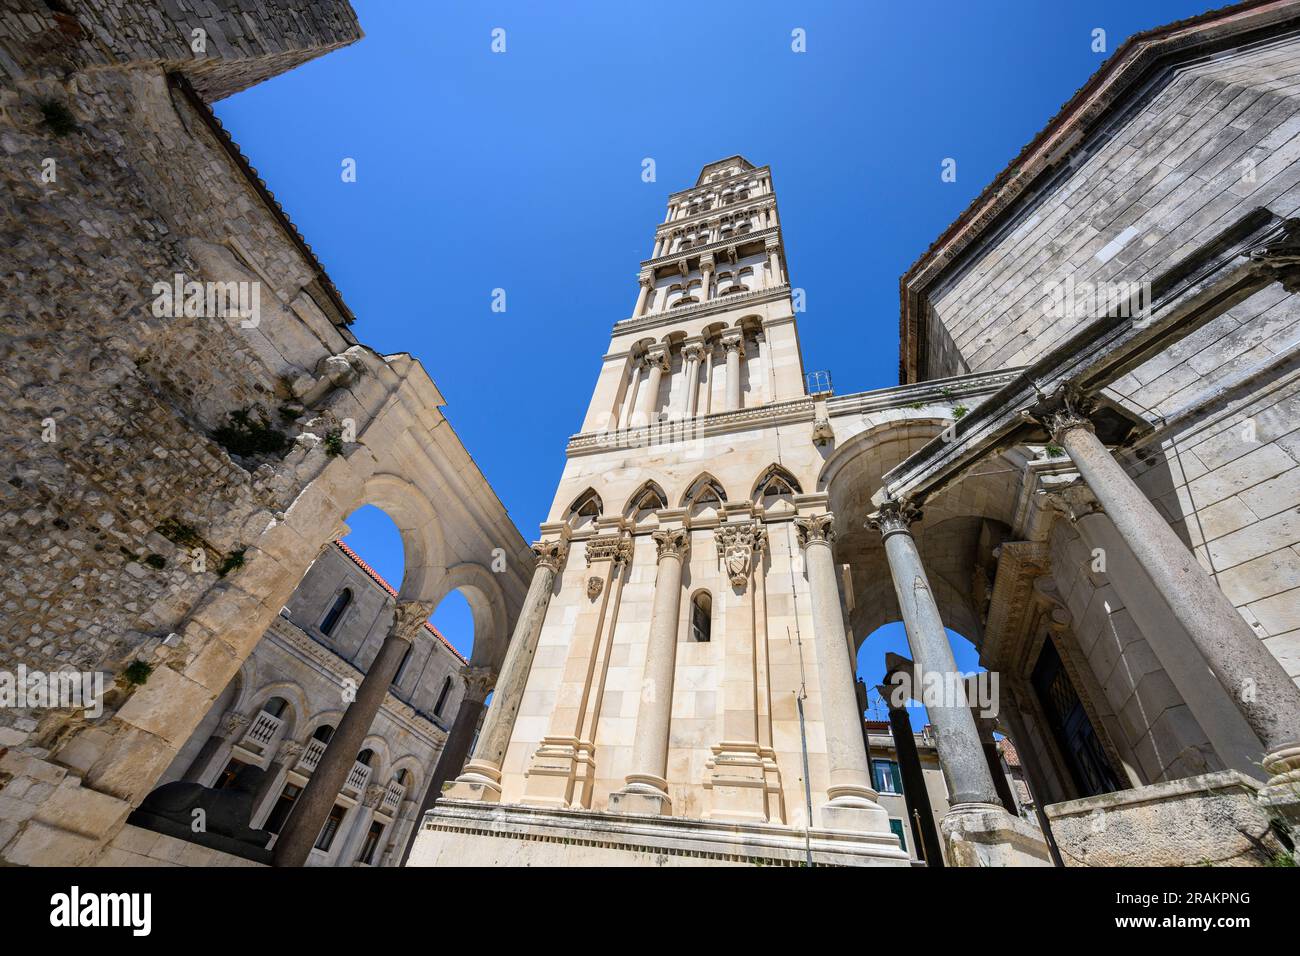 Der Glockenturm der Kathedrale von St. Domnius, der in den Überresten des römischen Palastes von Diokletian, Split, Dalmatien, Kroatien, erbaut wurde. Stockfoto